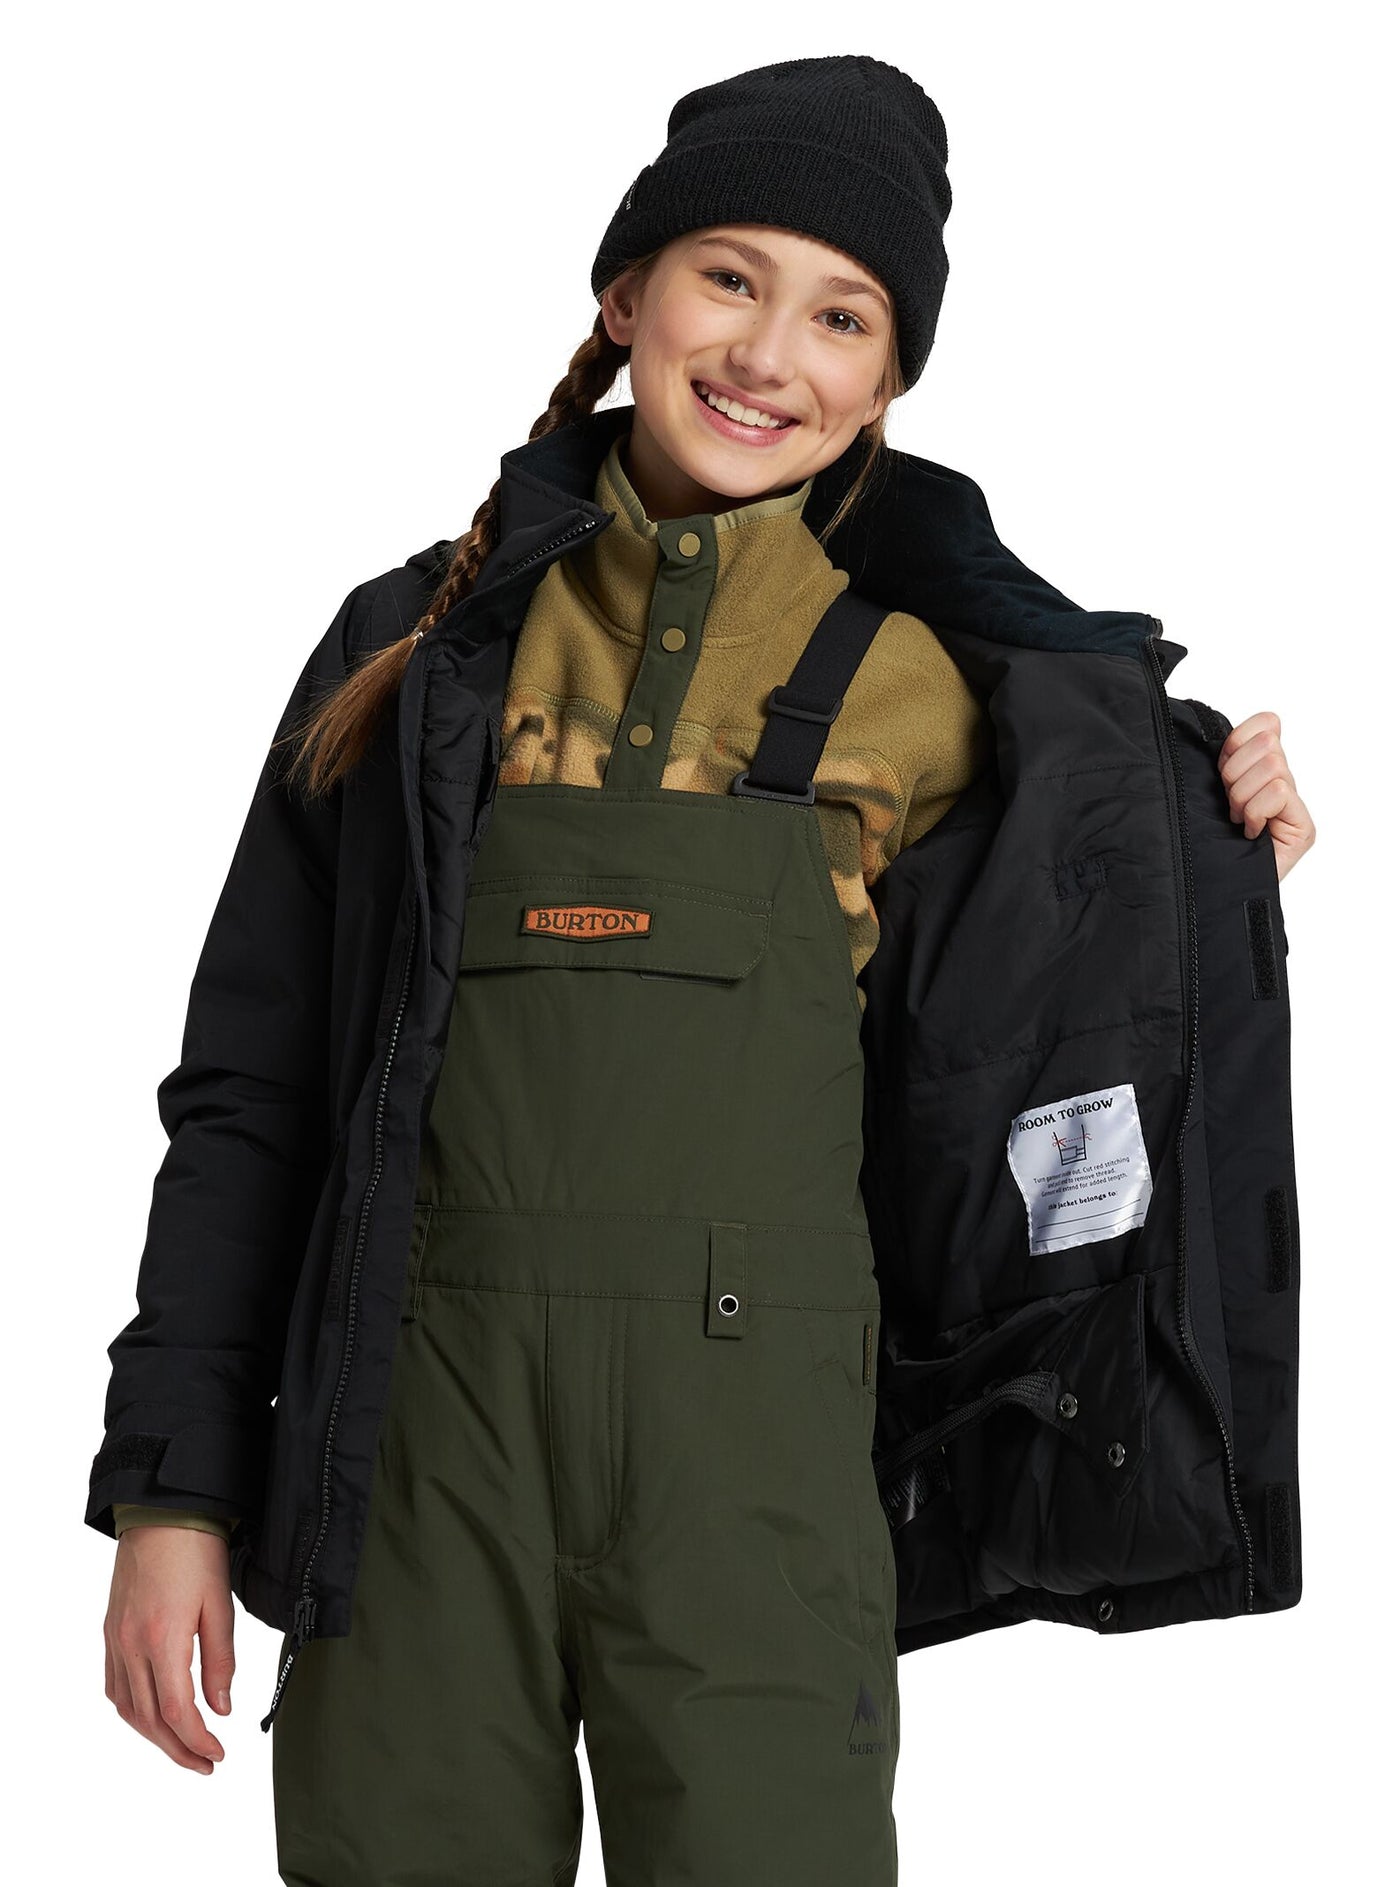 Burtonin Elodie musta lumilautailutakki tytön päällä joka näyttää takin vuorta